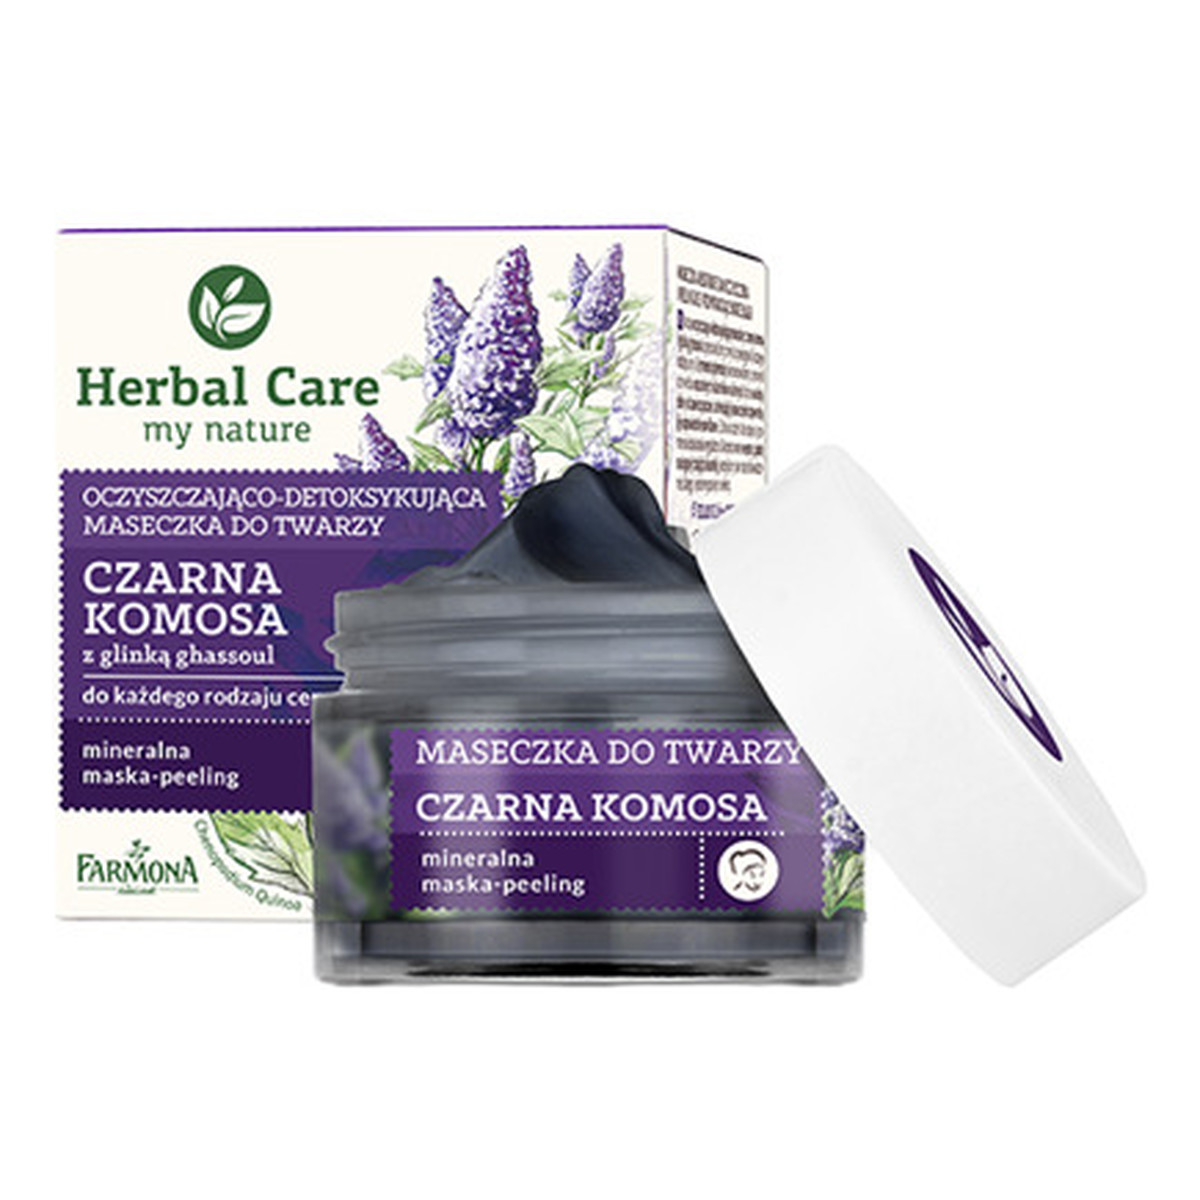 Farmona Herbal Care oczyszczająco-detoksykująca maseczka do twarzy Czarna Komosa 50ml